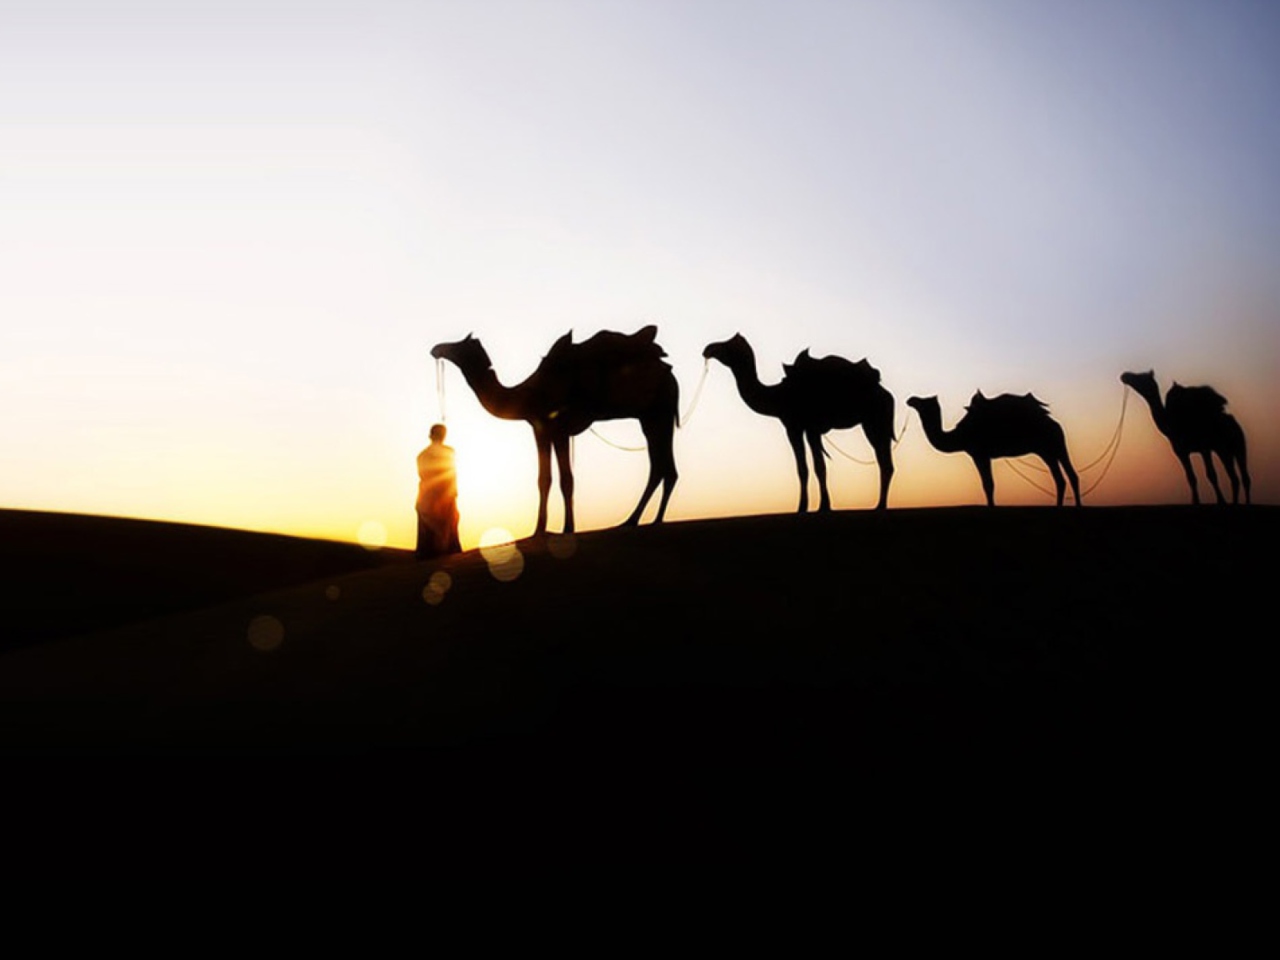 Обои Camel At Sunset 1280x960